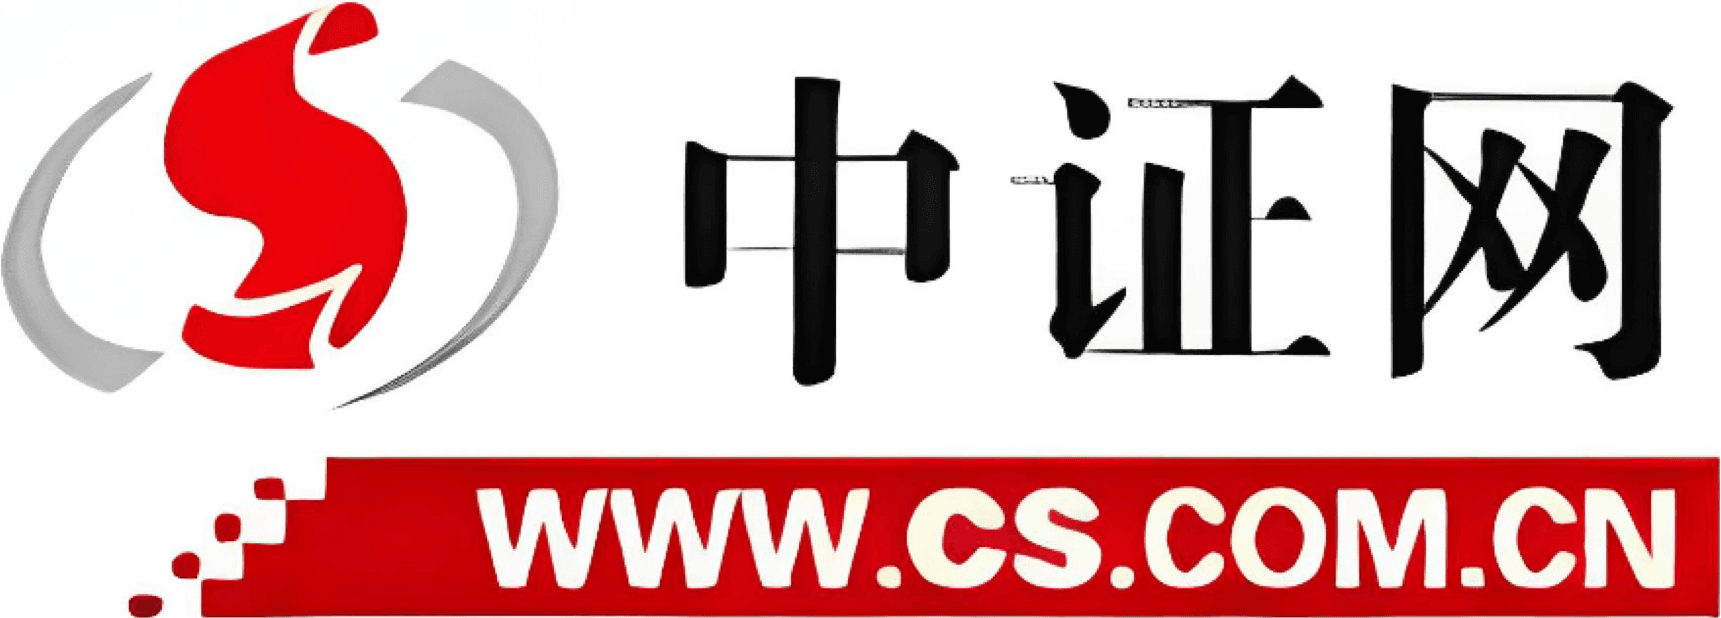 CS.com.cn